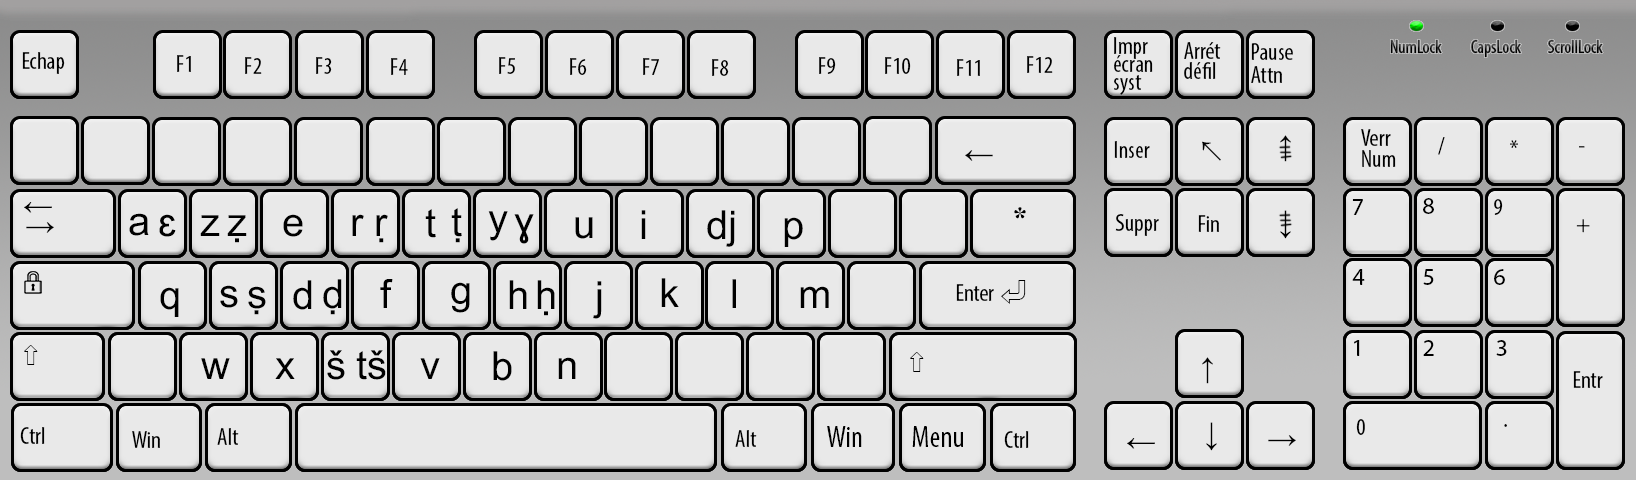 Tamazight Keyboard Latin layout